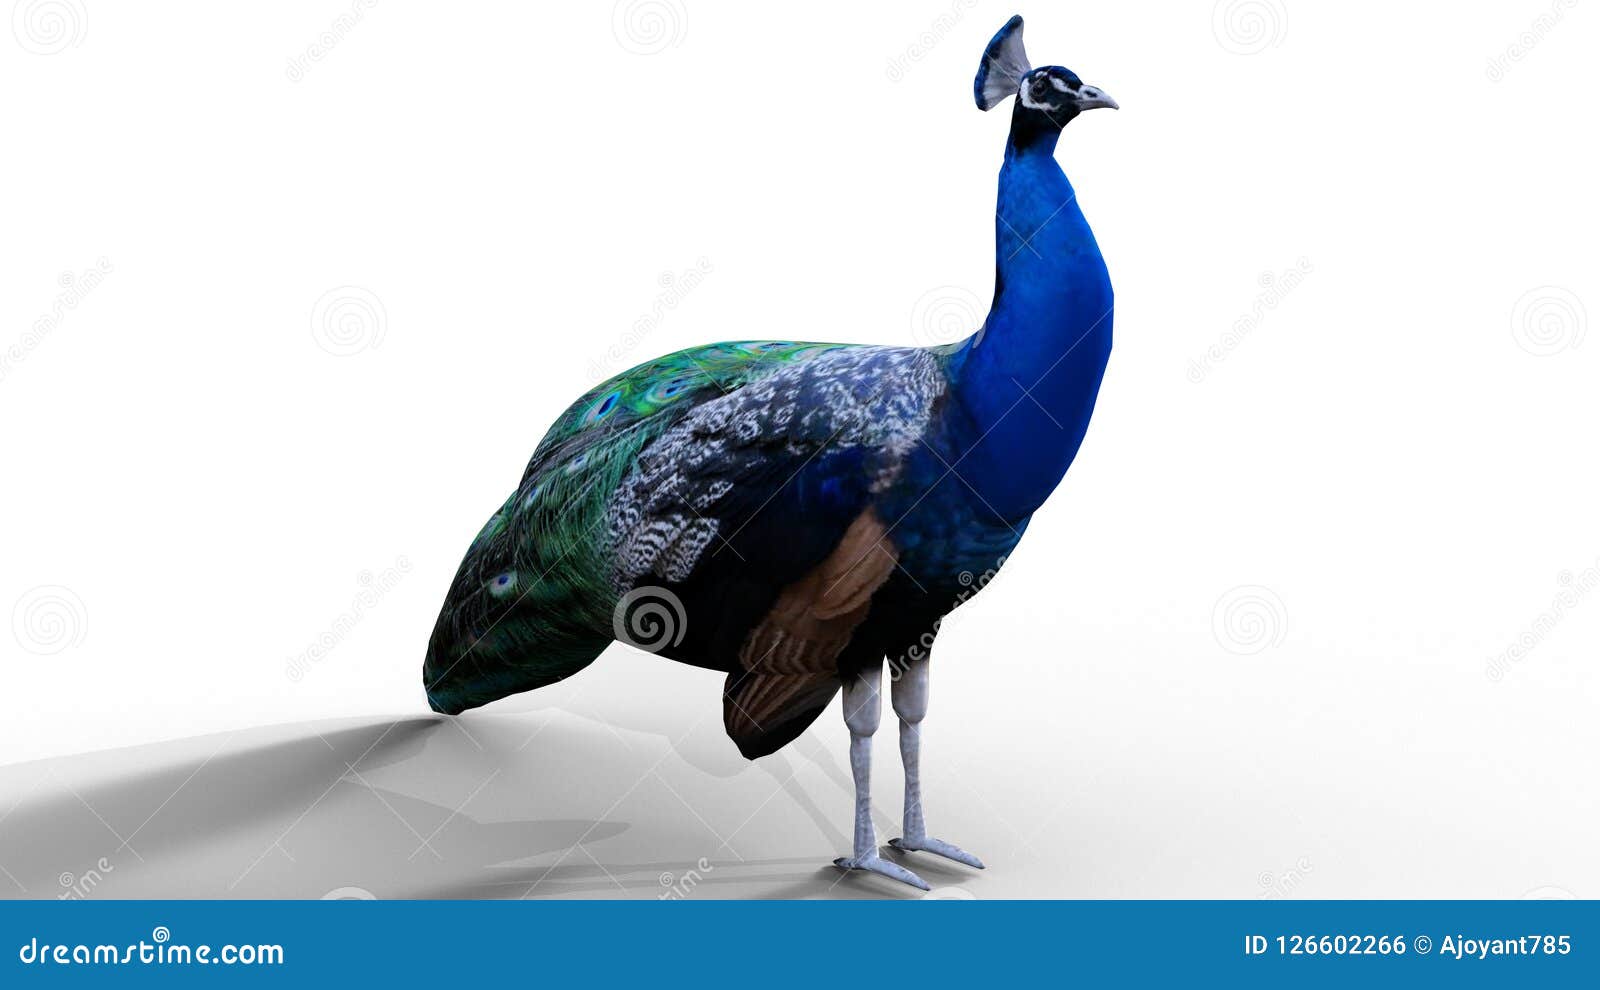 3d/ cgi peacock render